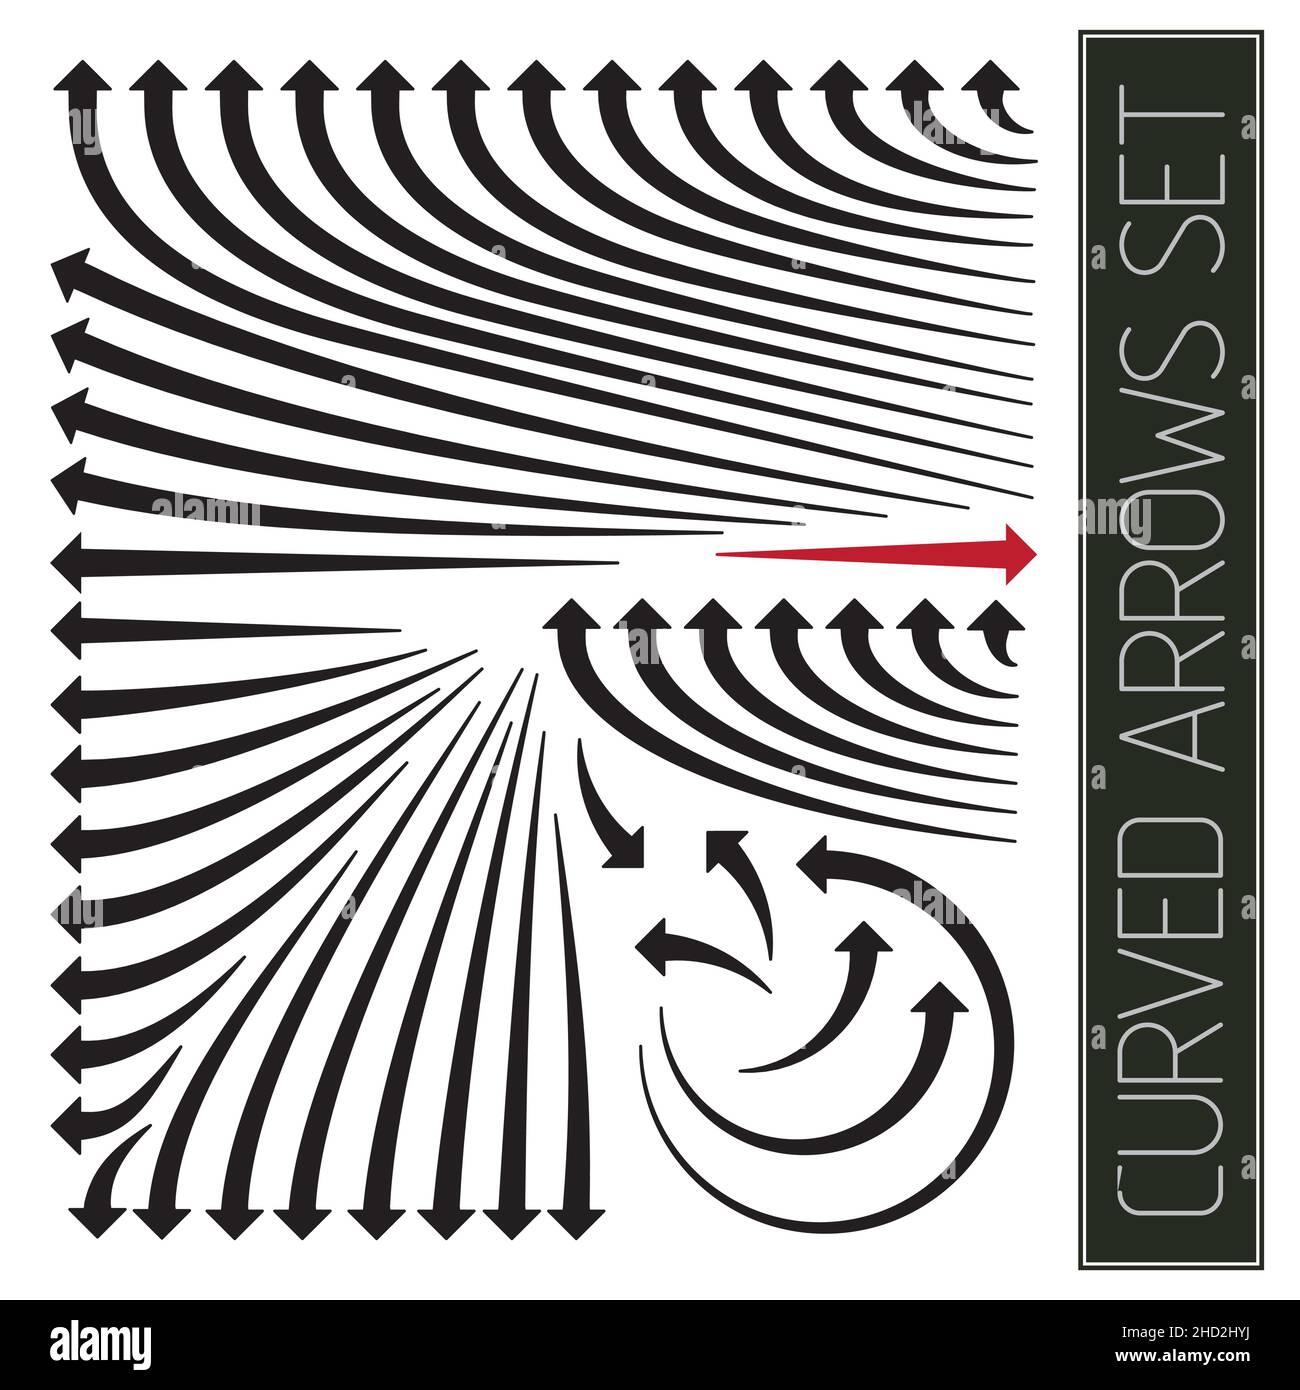 Punteros de flechas curvas con extremos redondeados: Herramienta infográfica Ilustración del Vector